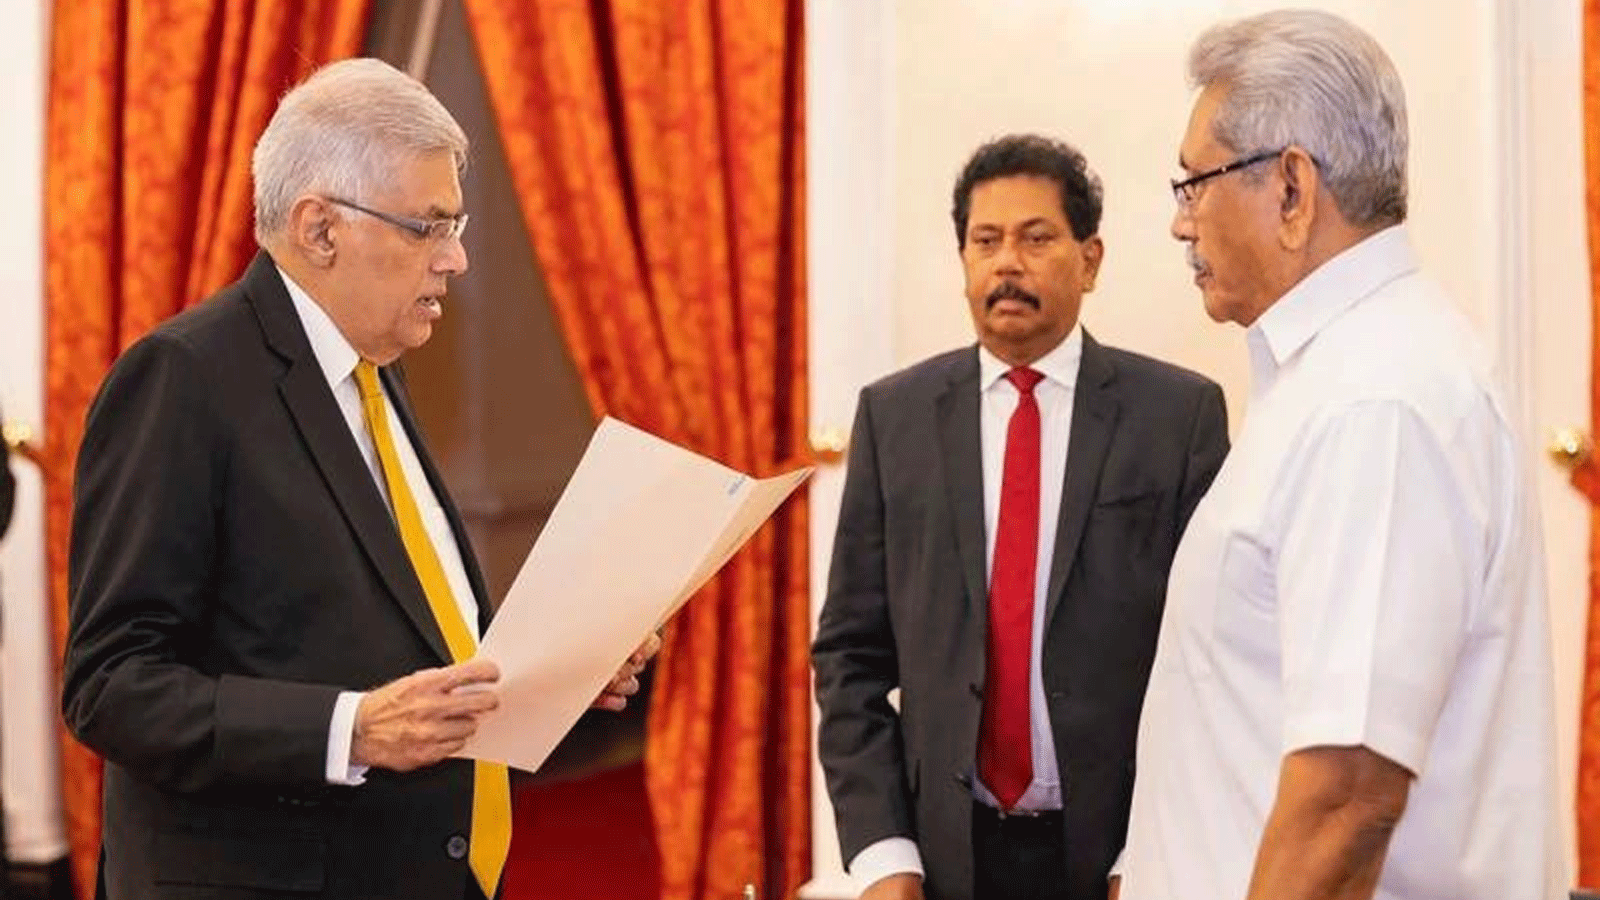 يُظهر مكتب رئيس سريلانكا رئيس الوزراء الجديد رانيل ويكرمسينغ (إلى اليسار) يحضر أداء اليمين أمام الرئيس جوتابايا راجاباكسا (إلى اليمين) في قصر الرئيس في كولومبو